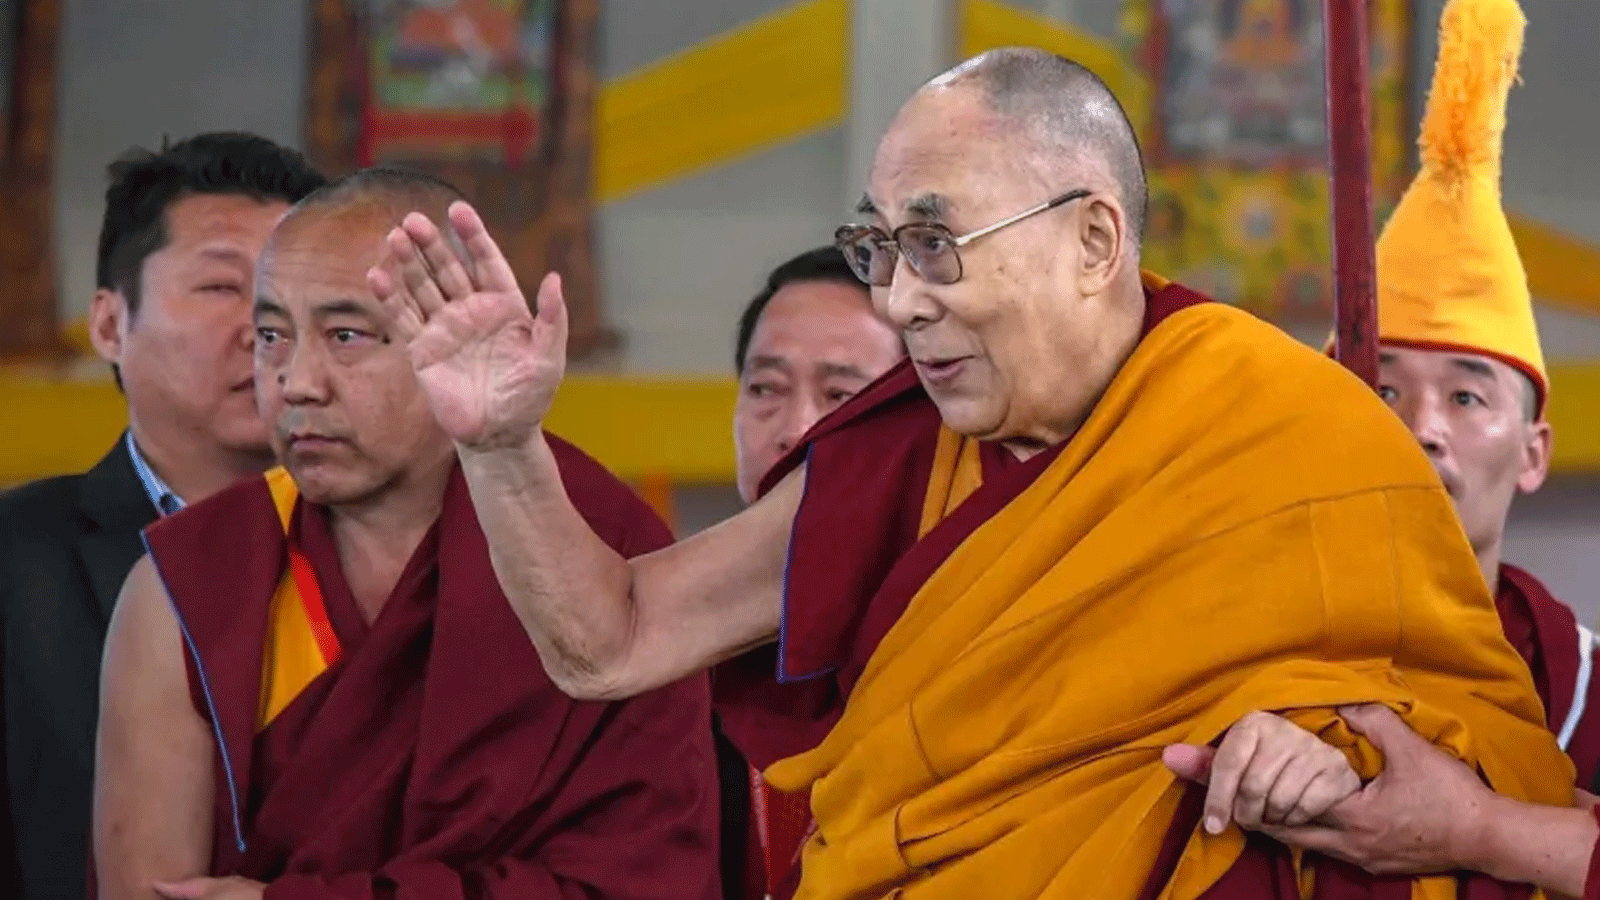 الدالاي لاما(في الوسط) يُحيي المصلين في الحفل الختامي لجلسة تعليمية في الموقع البوذي المقدس بود جايا، الهند. في 31 كانون الاول\ديسمبر 2018